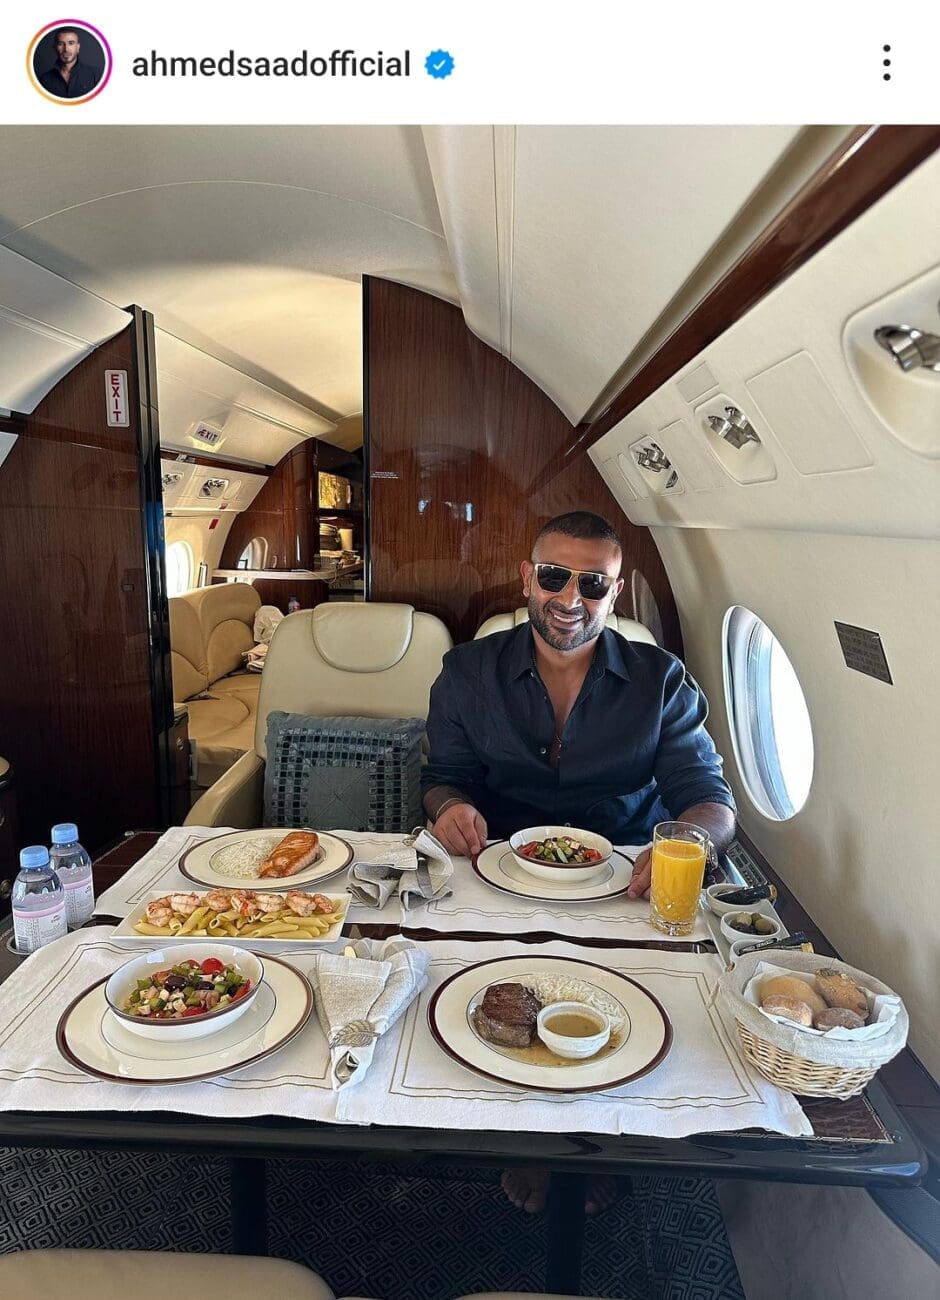 أحمد سعد في طيارة خاصة عبر حسابه الخاص في انستغرام 